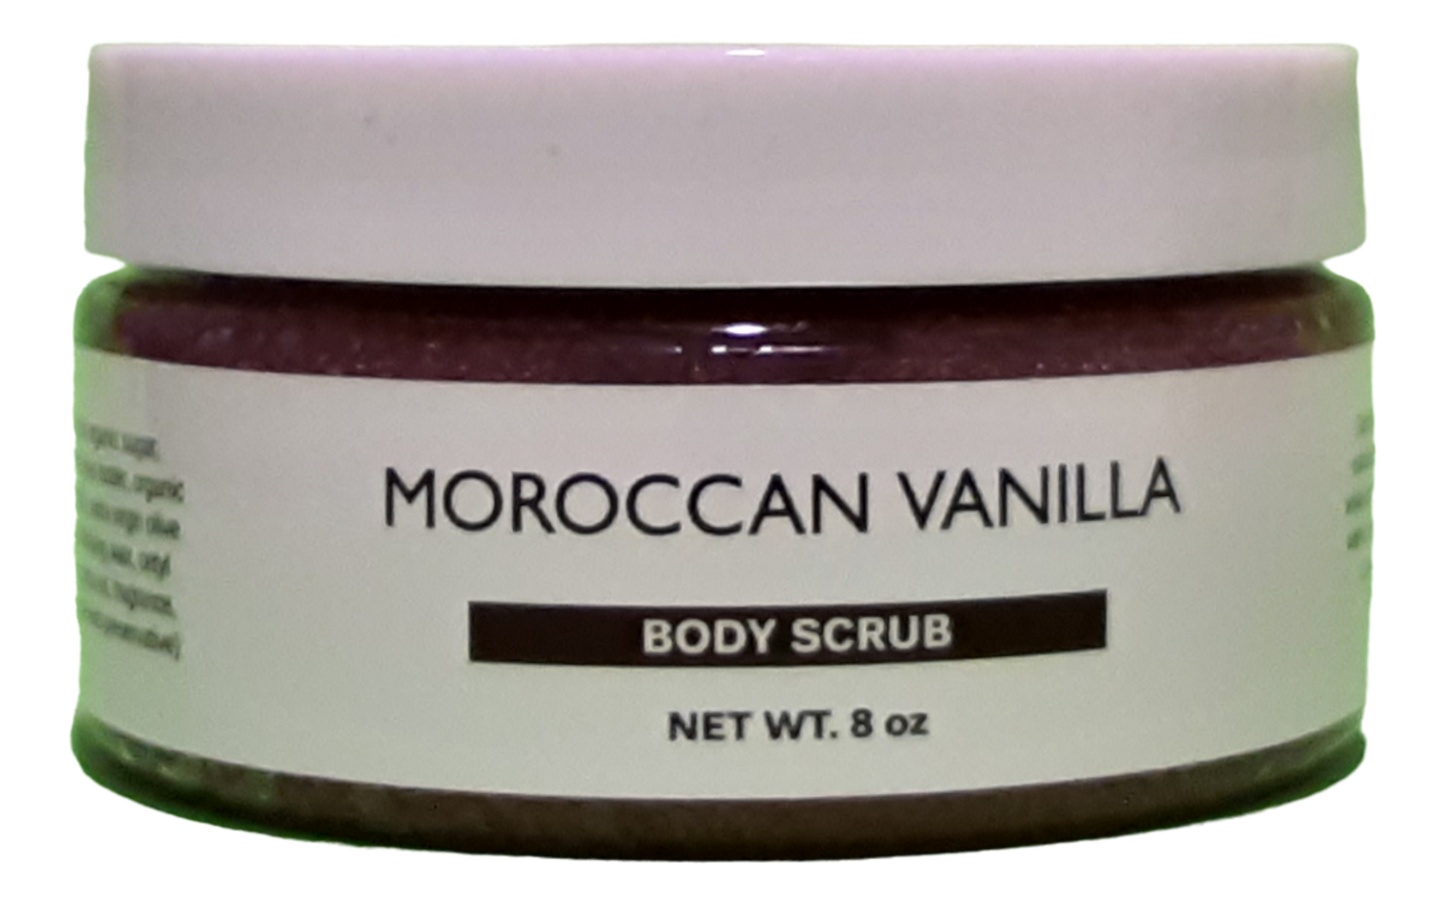 Moroccan Vanilla Body Scrub